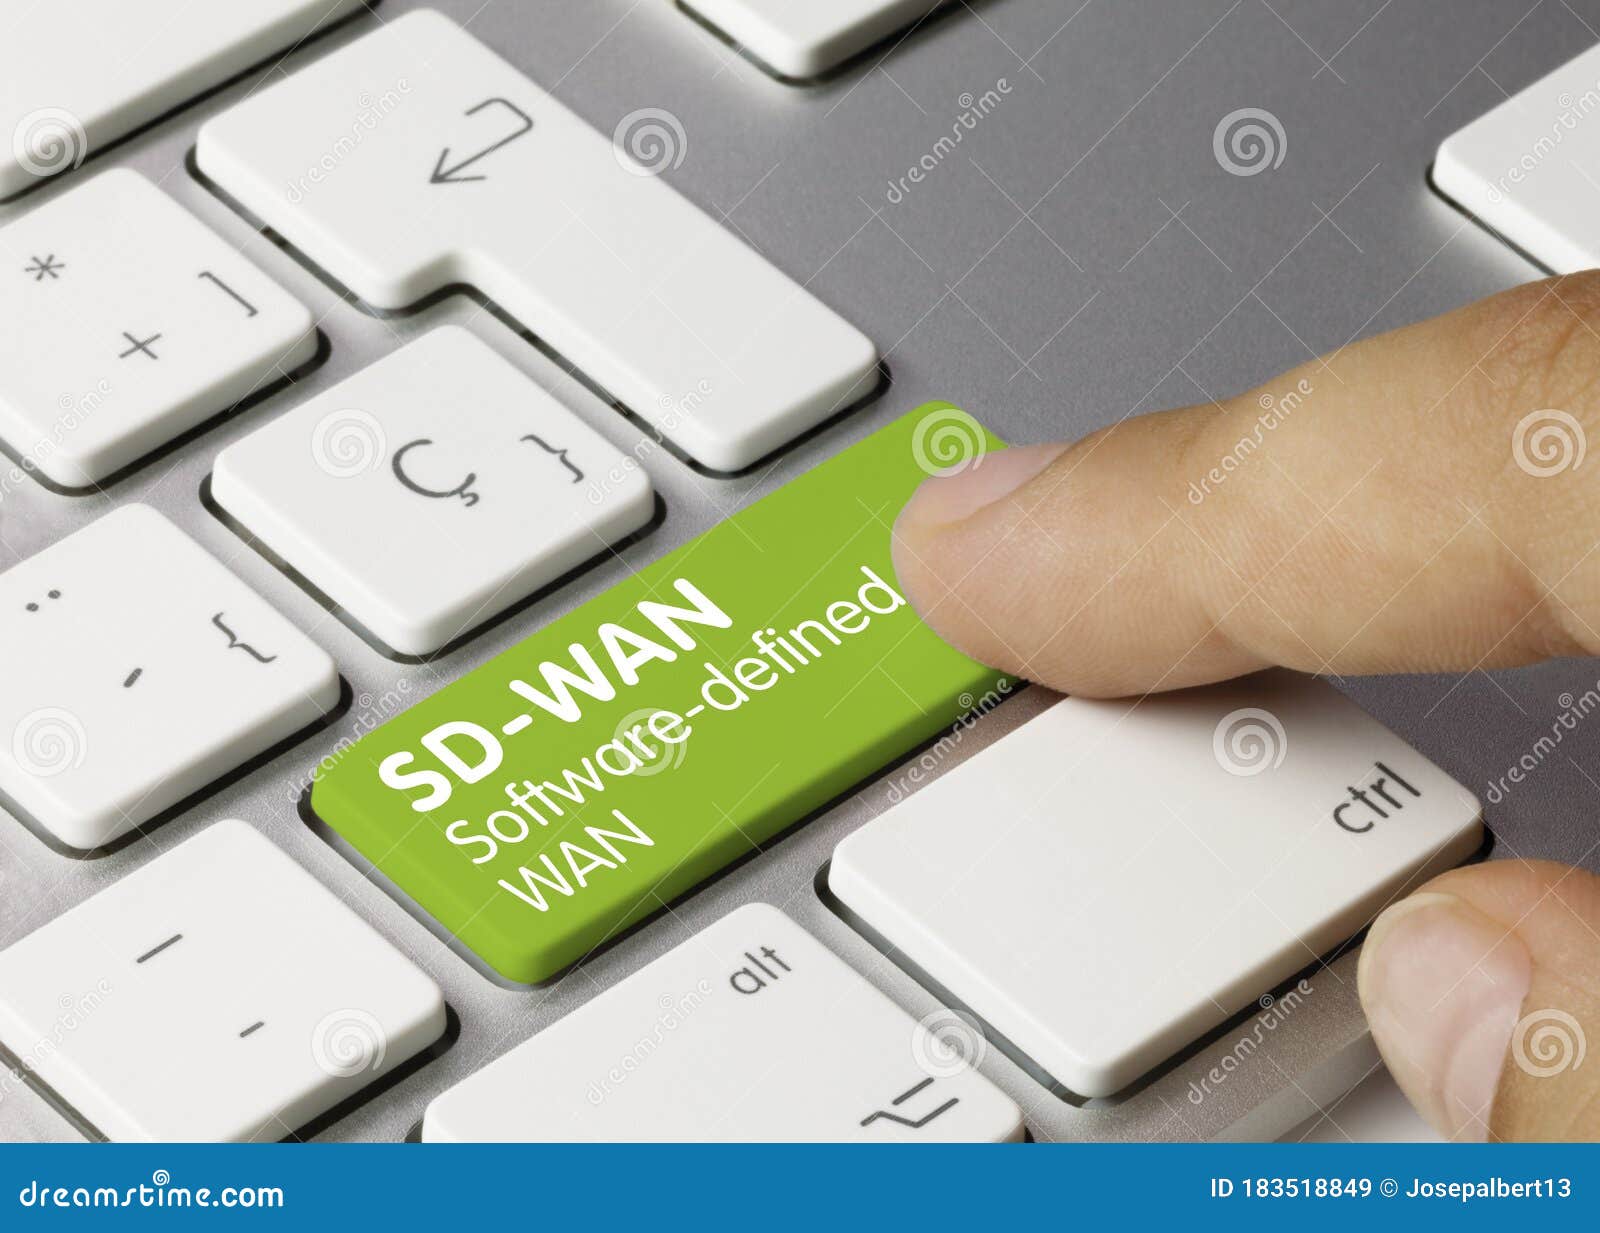 sd-wan software-defined wan - inscription on green keyboard key